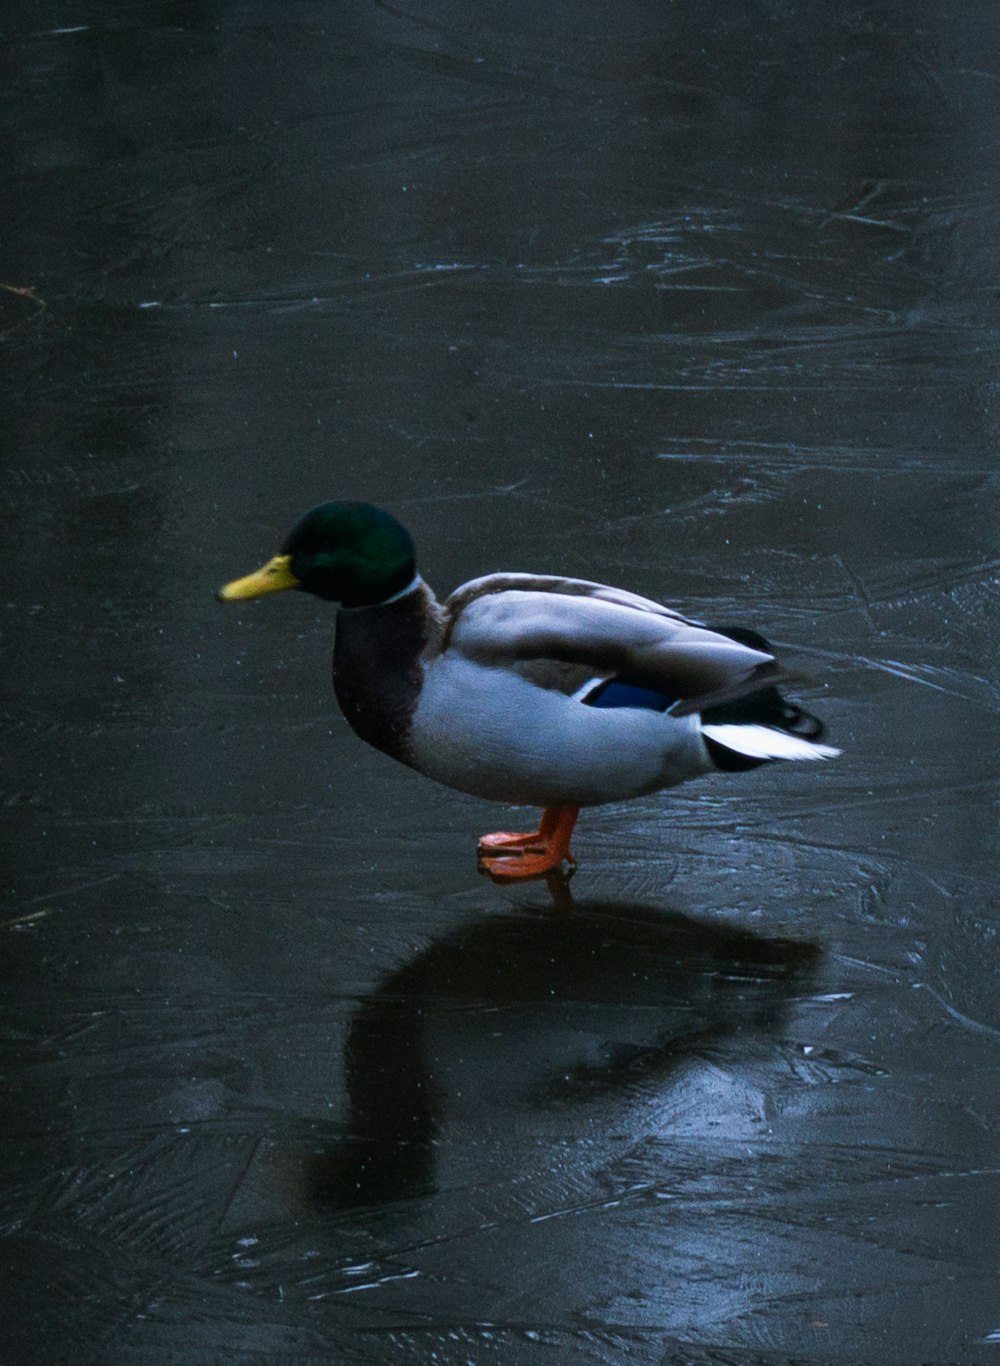 a duck walking on water